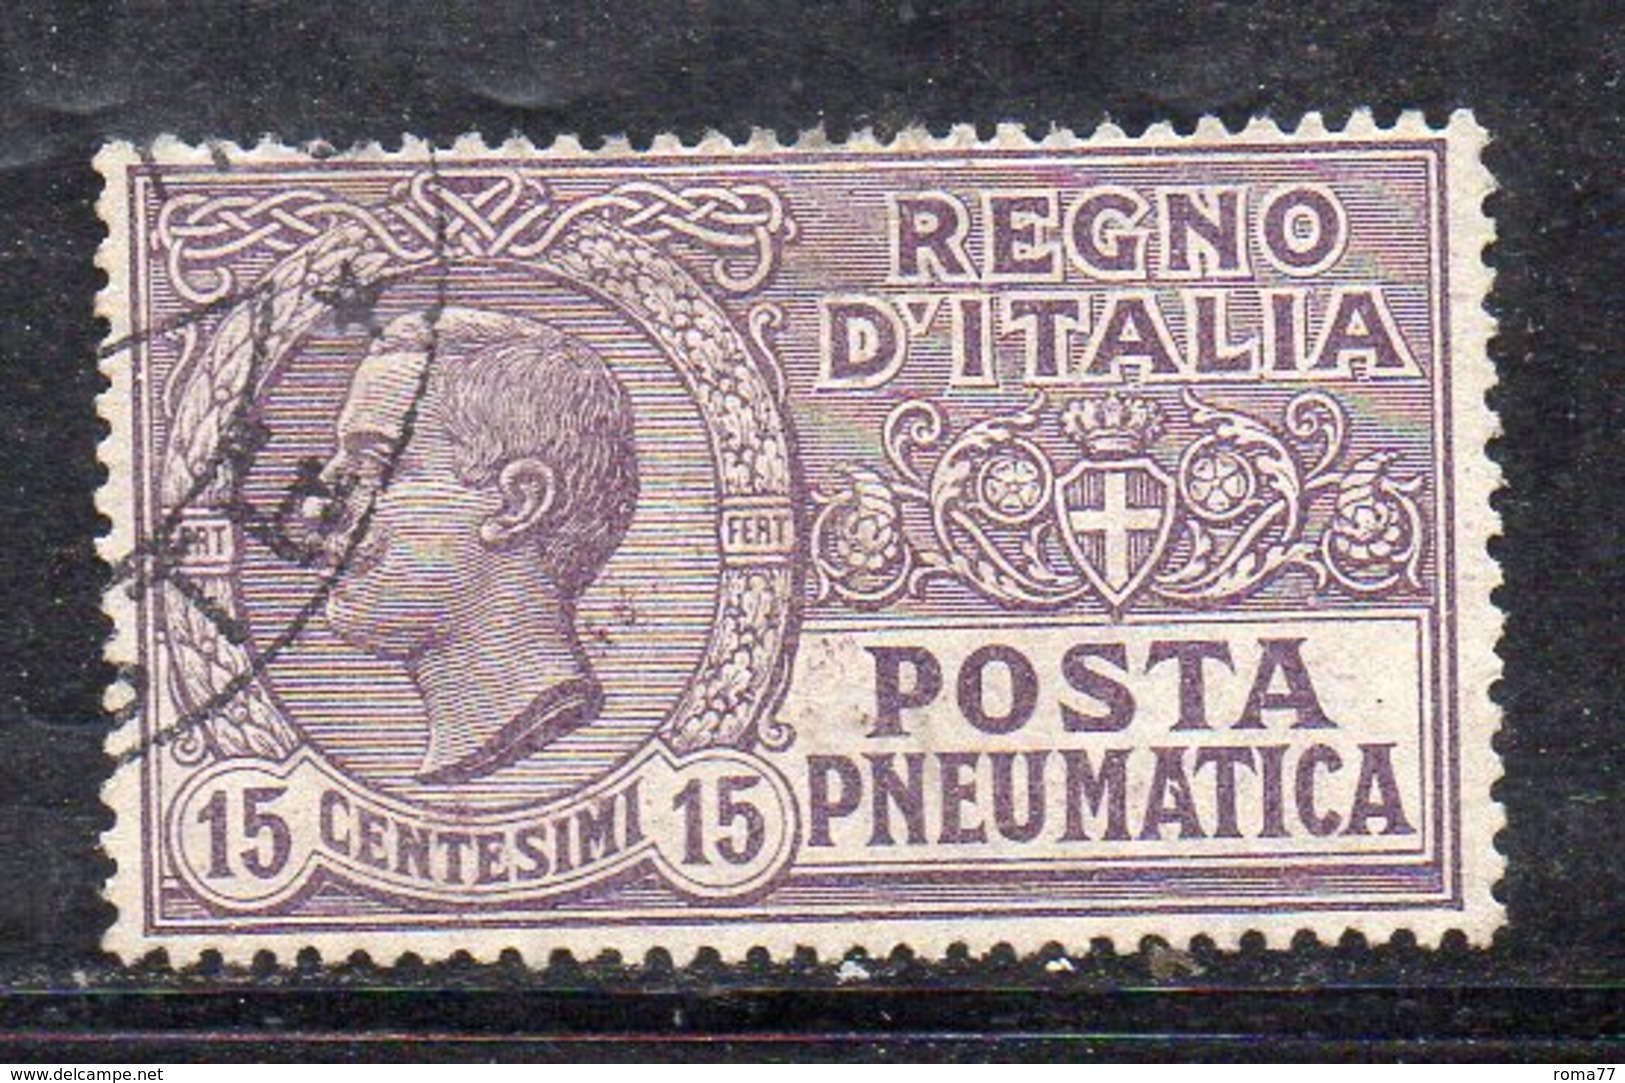 T26 - REGNO 1913 , Posta Pneumatica  15 Cent. N. 2 Usato (M2200) - Rohrpost